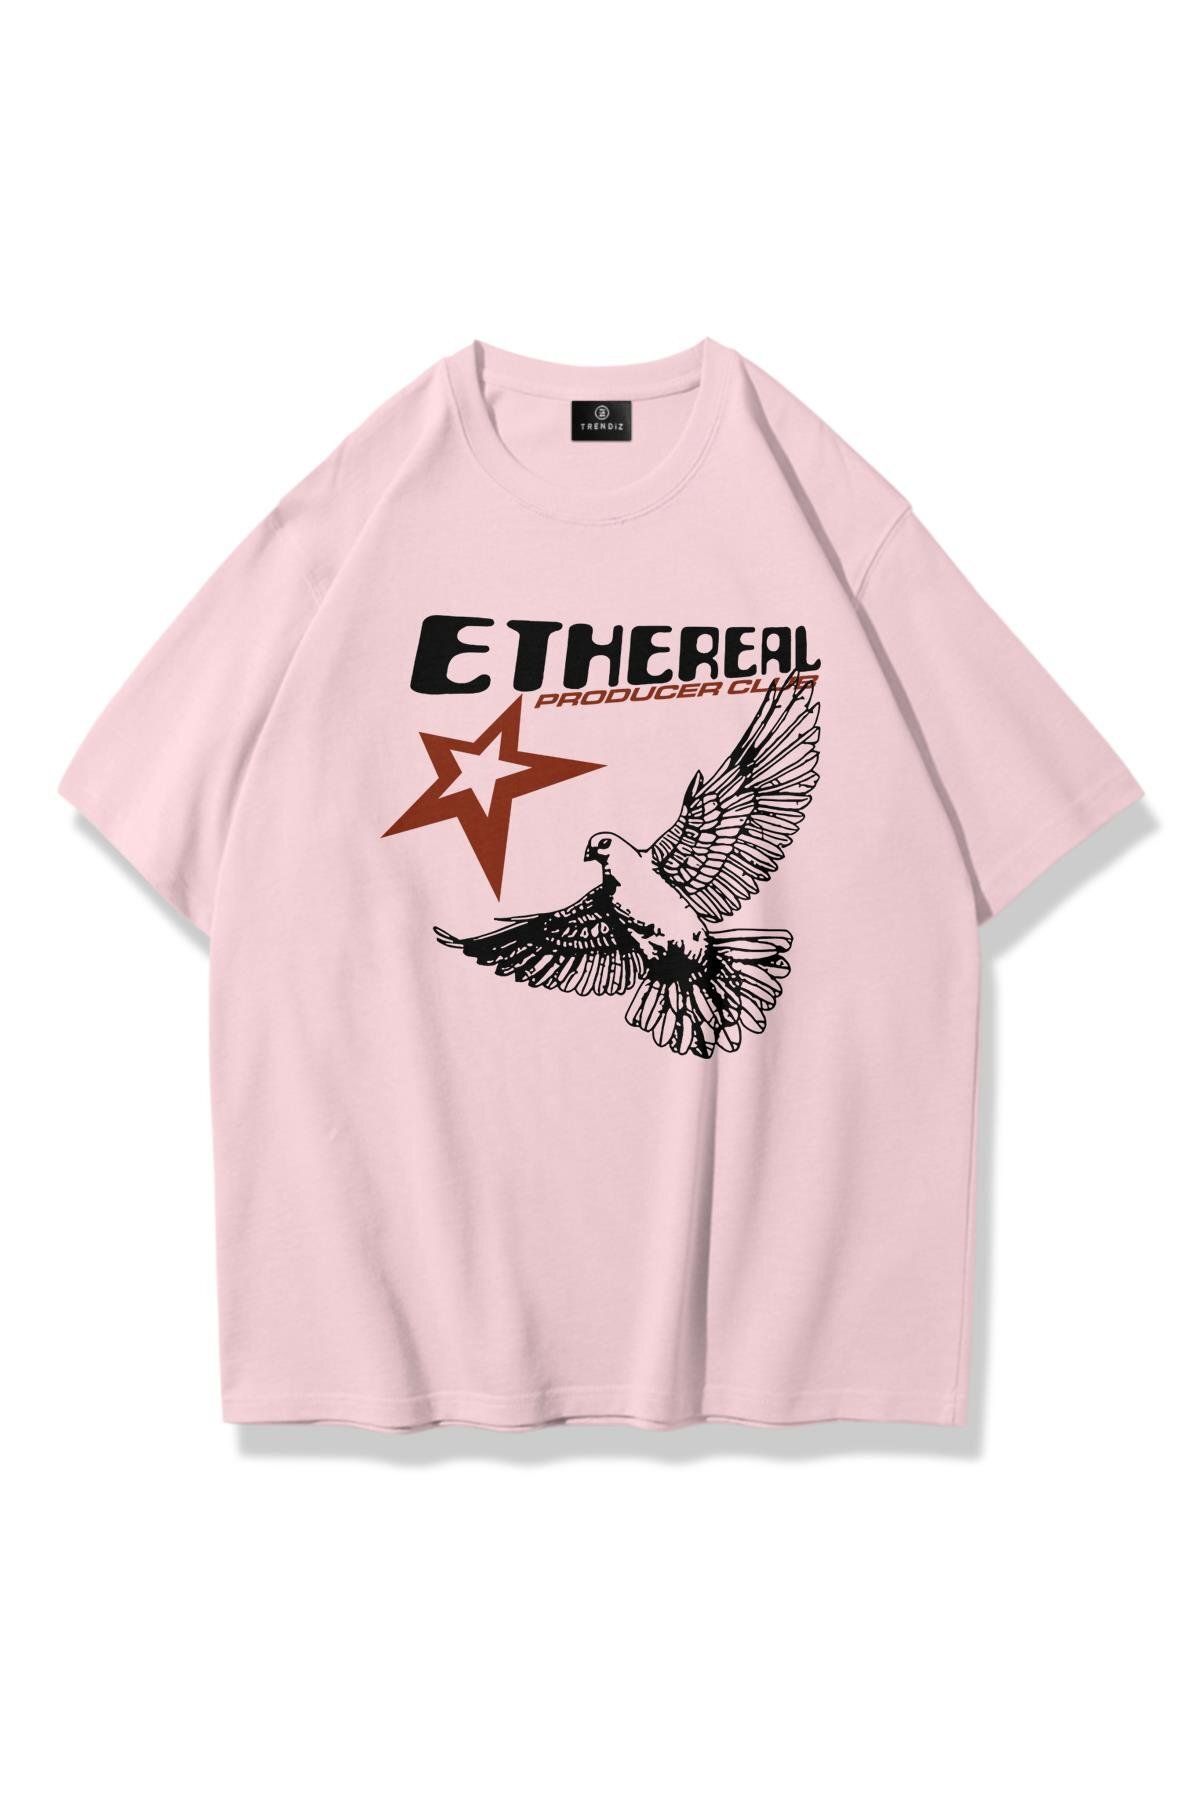 Trendiz Unisex Ethereal Tshirt Pembe